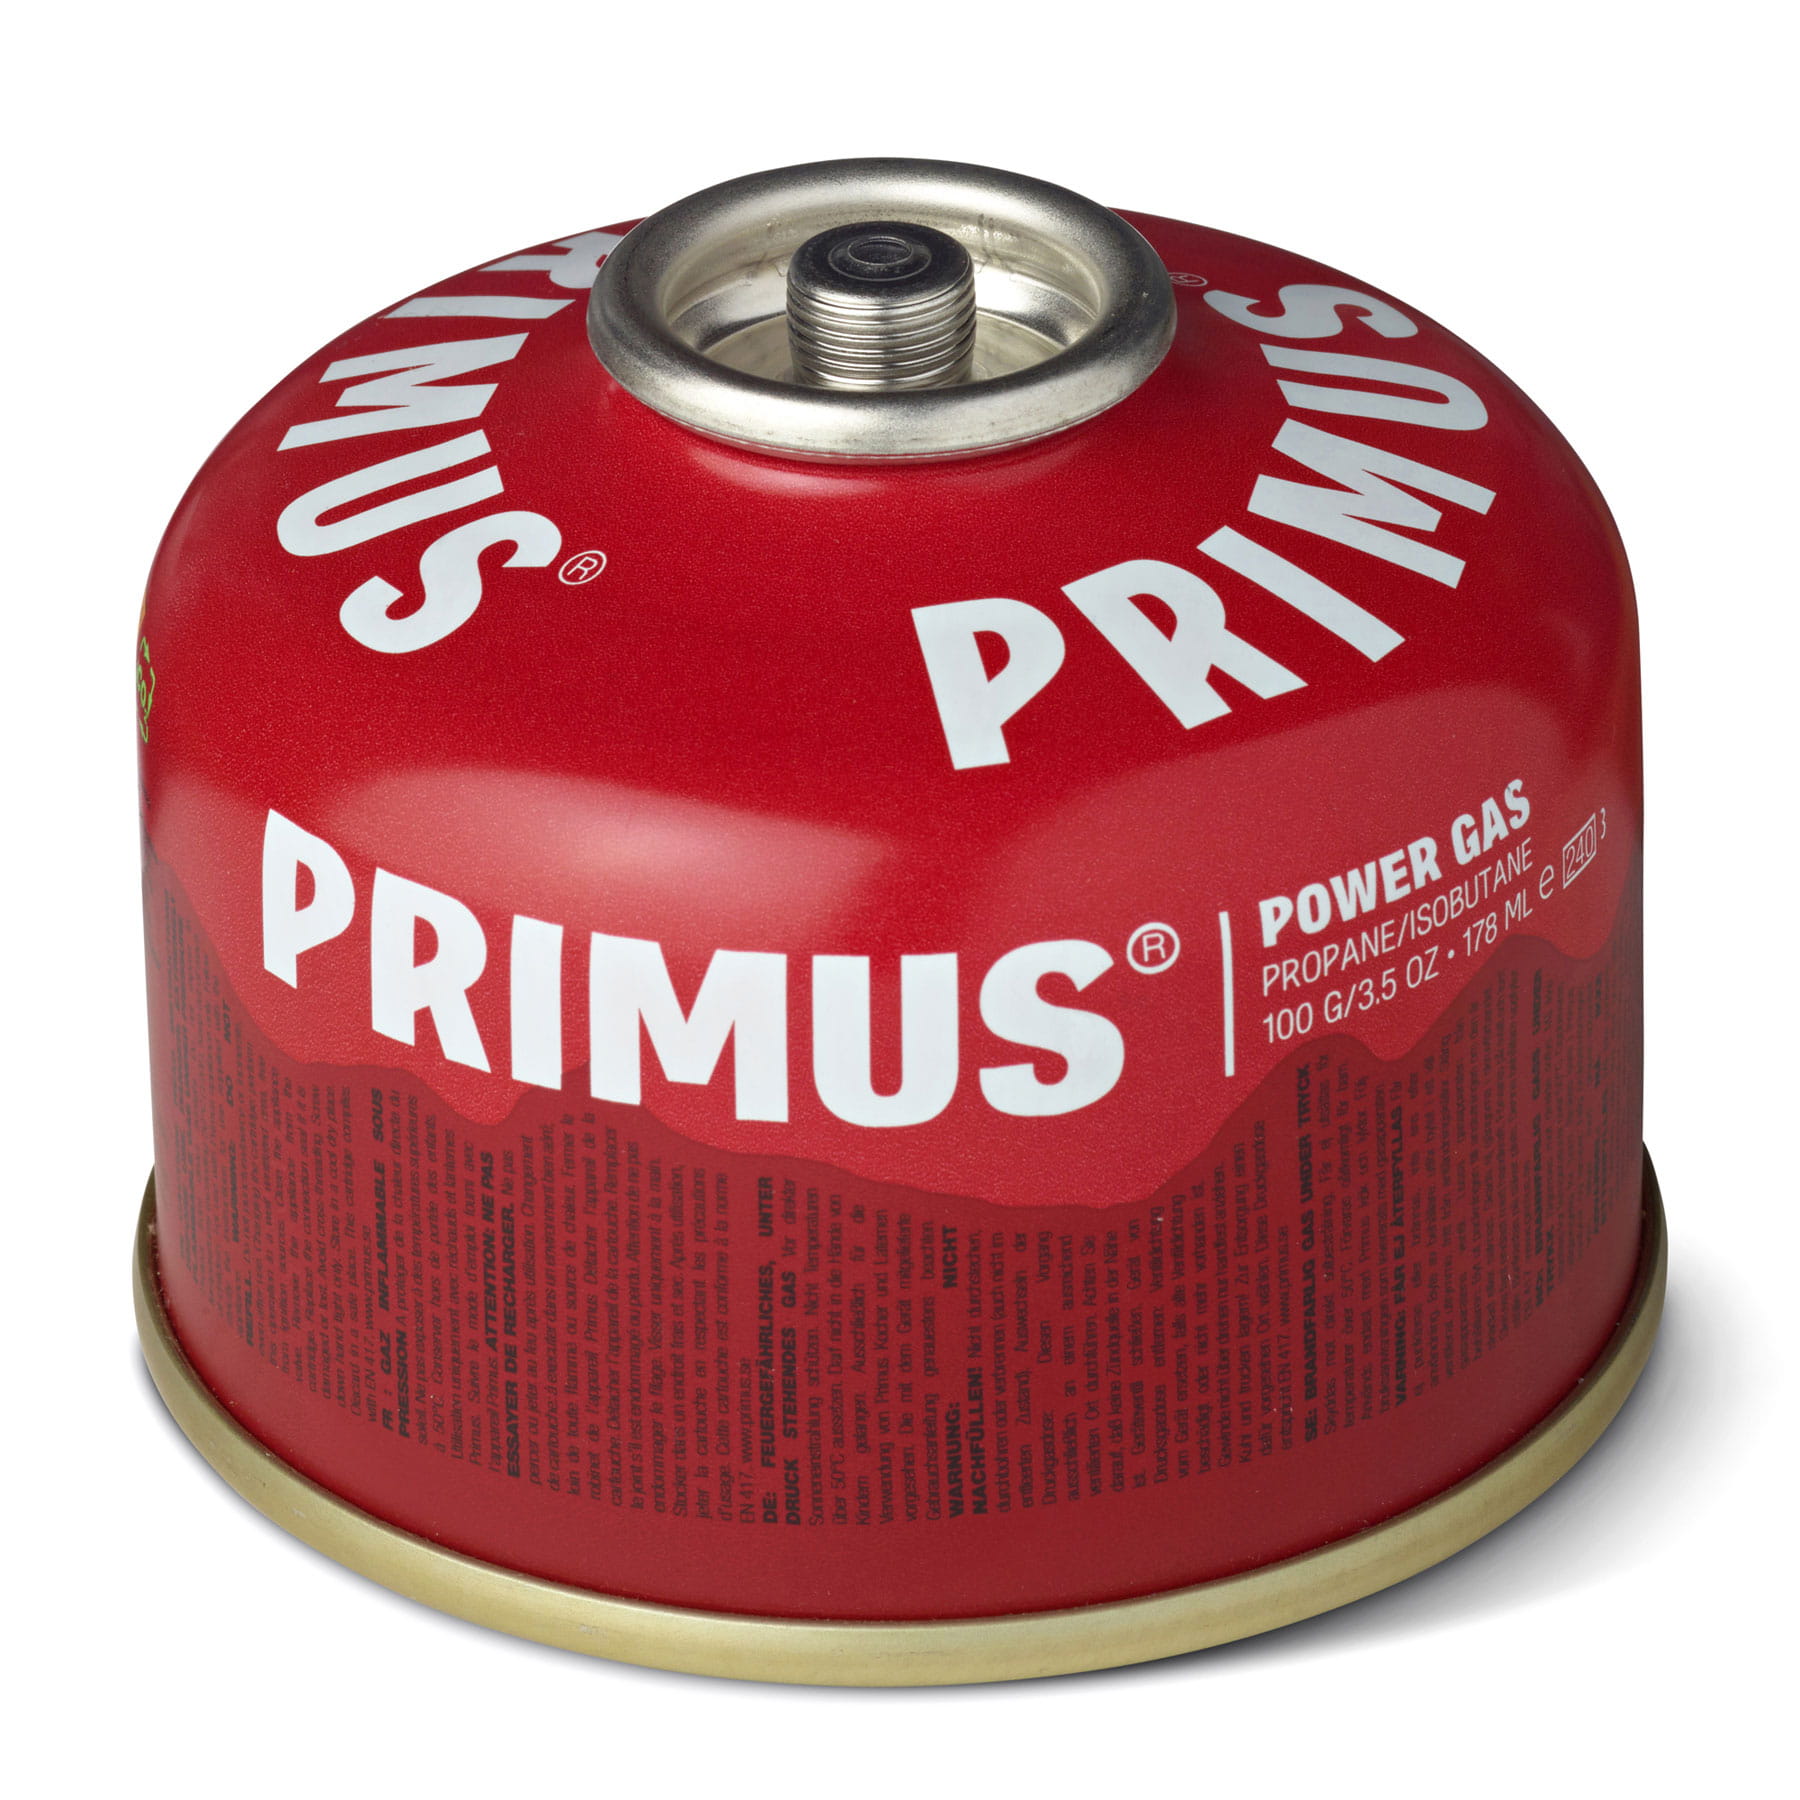 Primus Power Gas schraubbare Gaskartusche